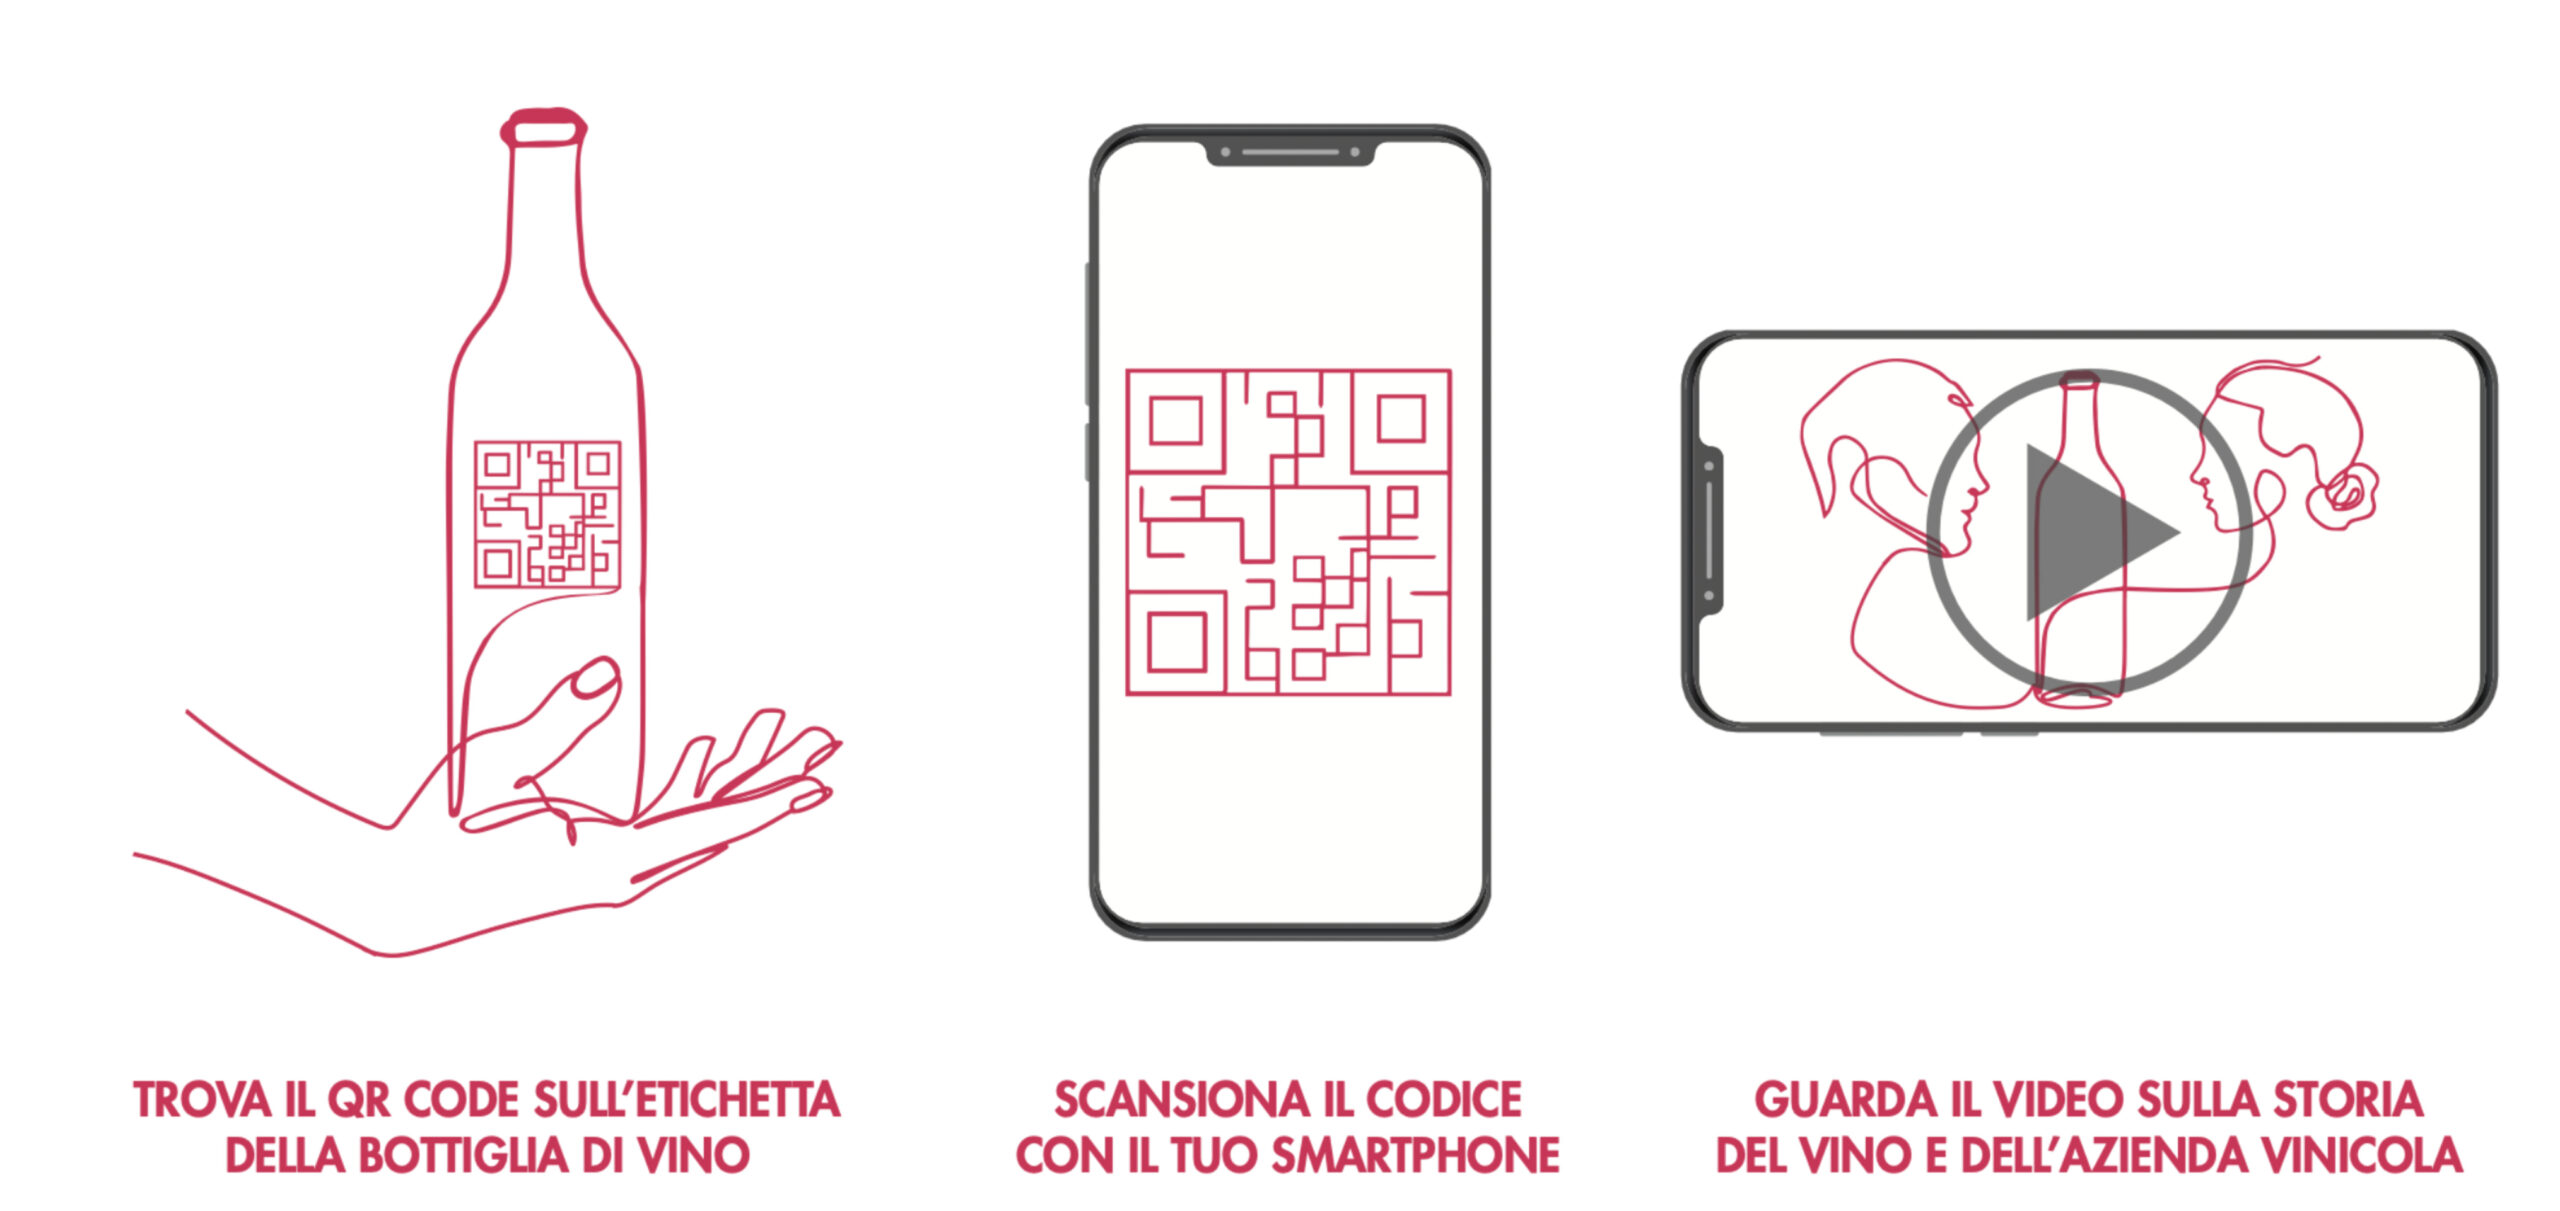  Qwine Code: in un progetto sul vino si usa lo smartphone per leggere il QR Code e ricevere un video di 30” con molte notizie